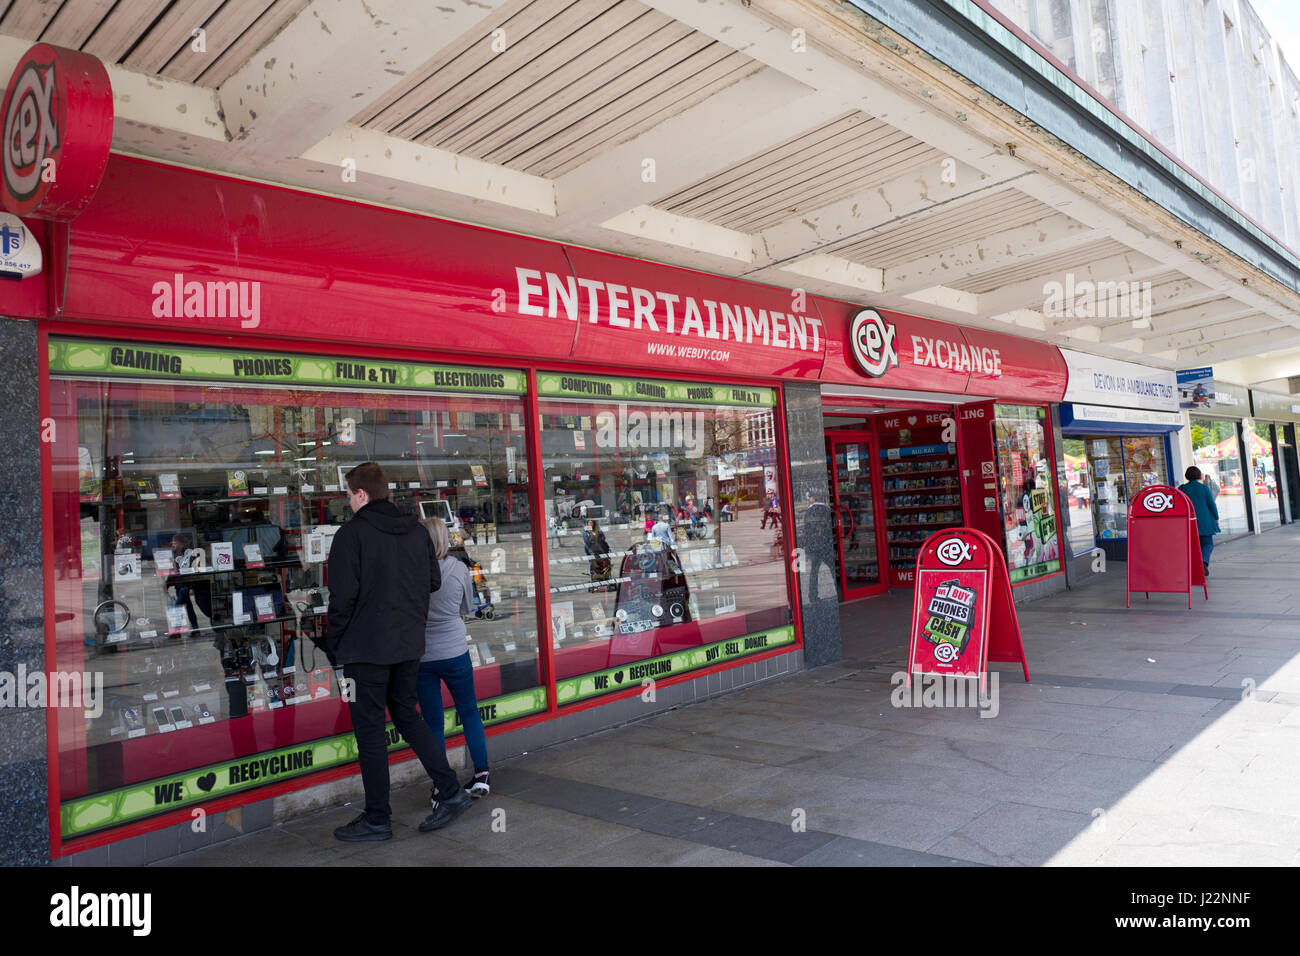 Entertainment Exchange store, UK Stock Photo